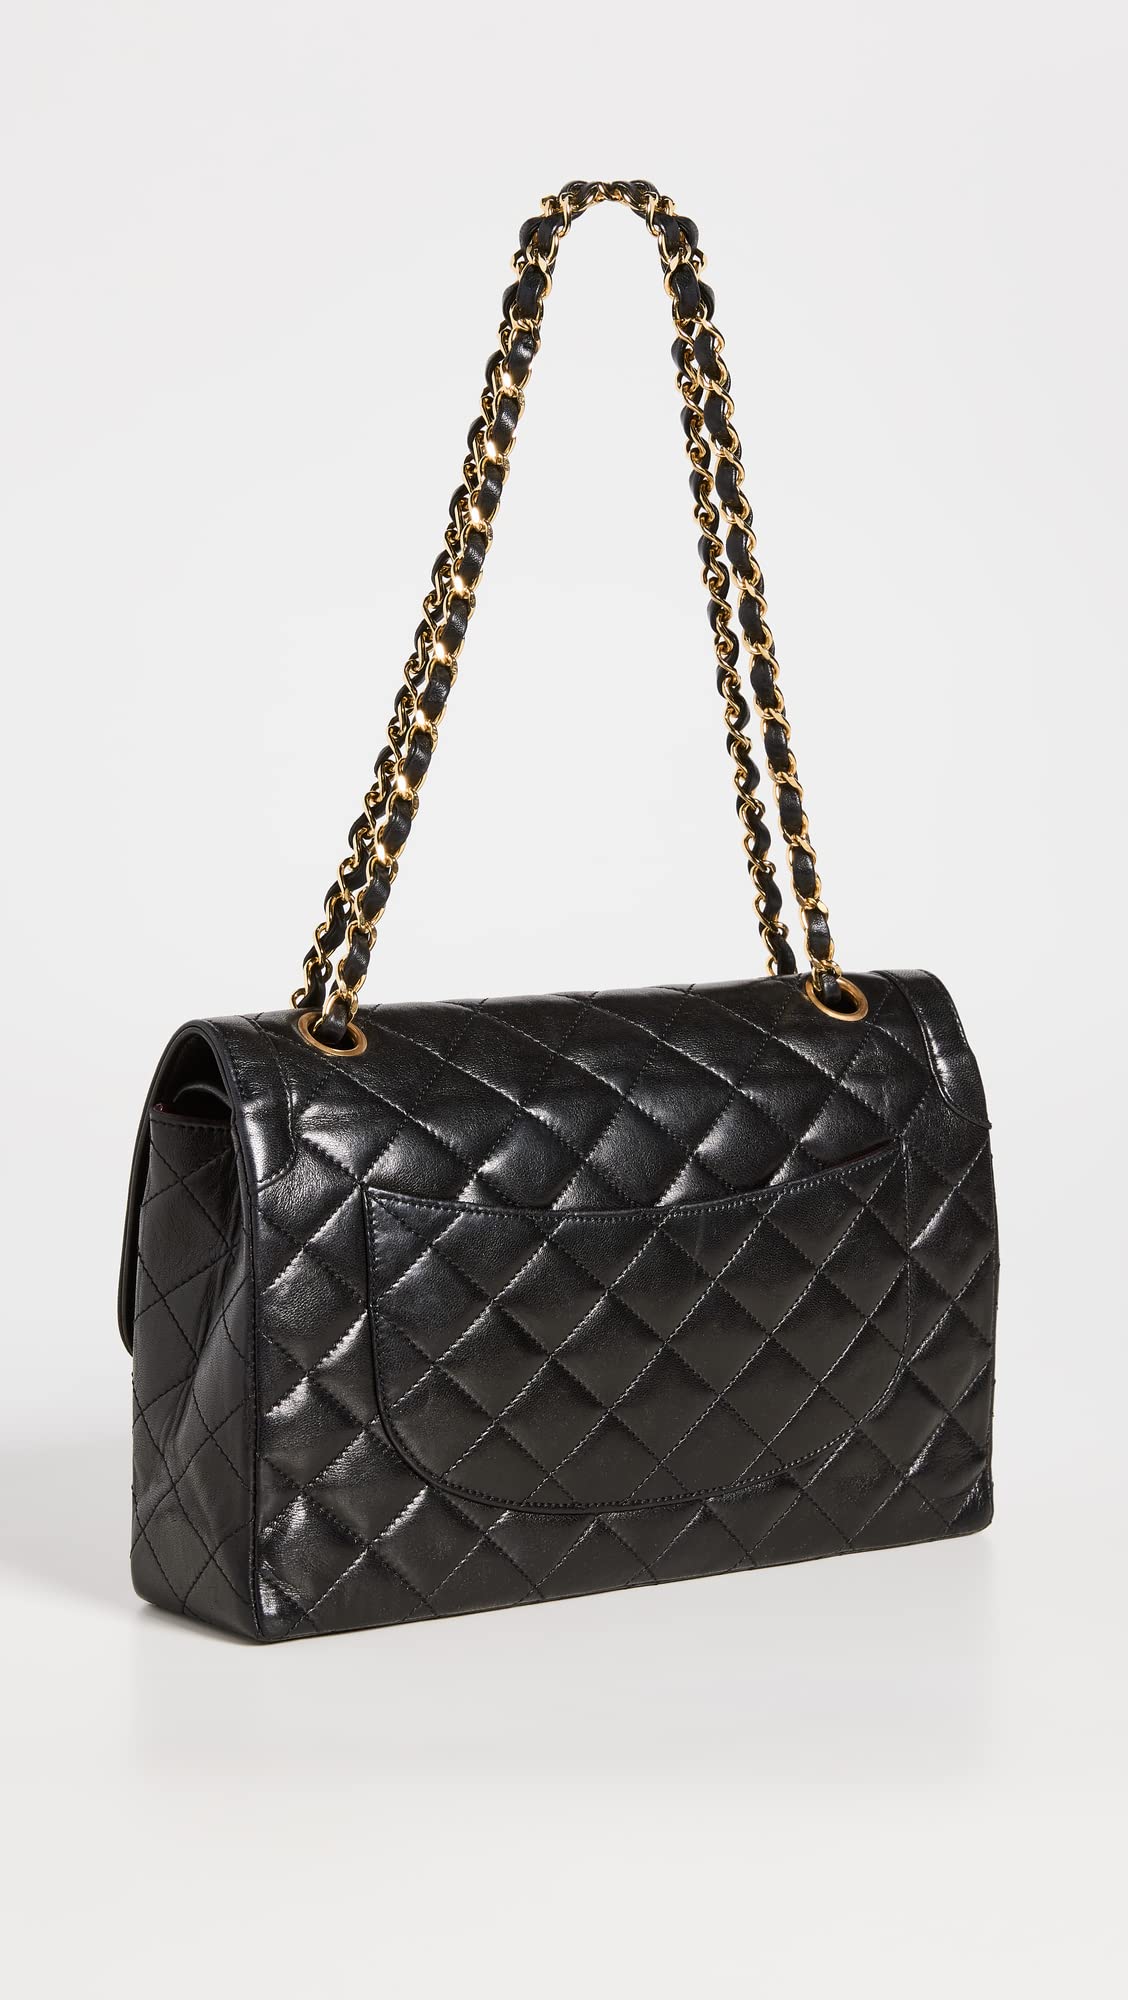 CHANEL Women's Pre-Loved Black Paris Shoulder Bag